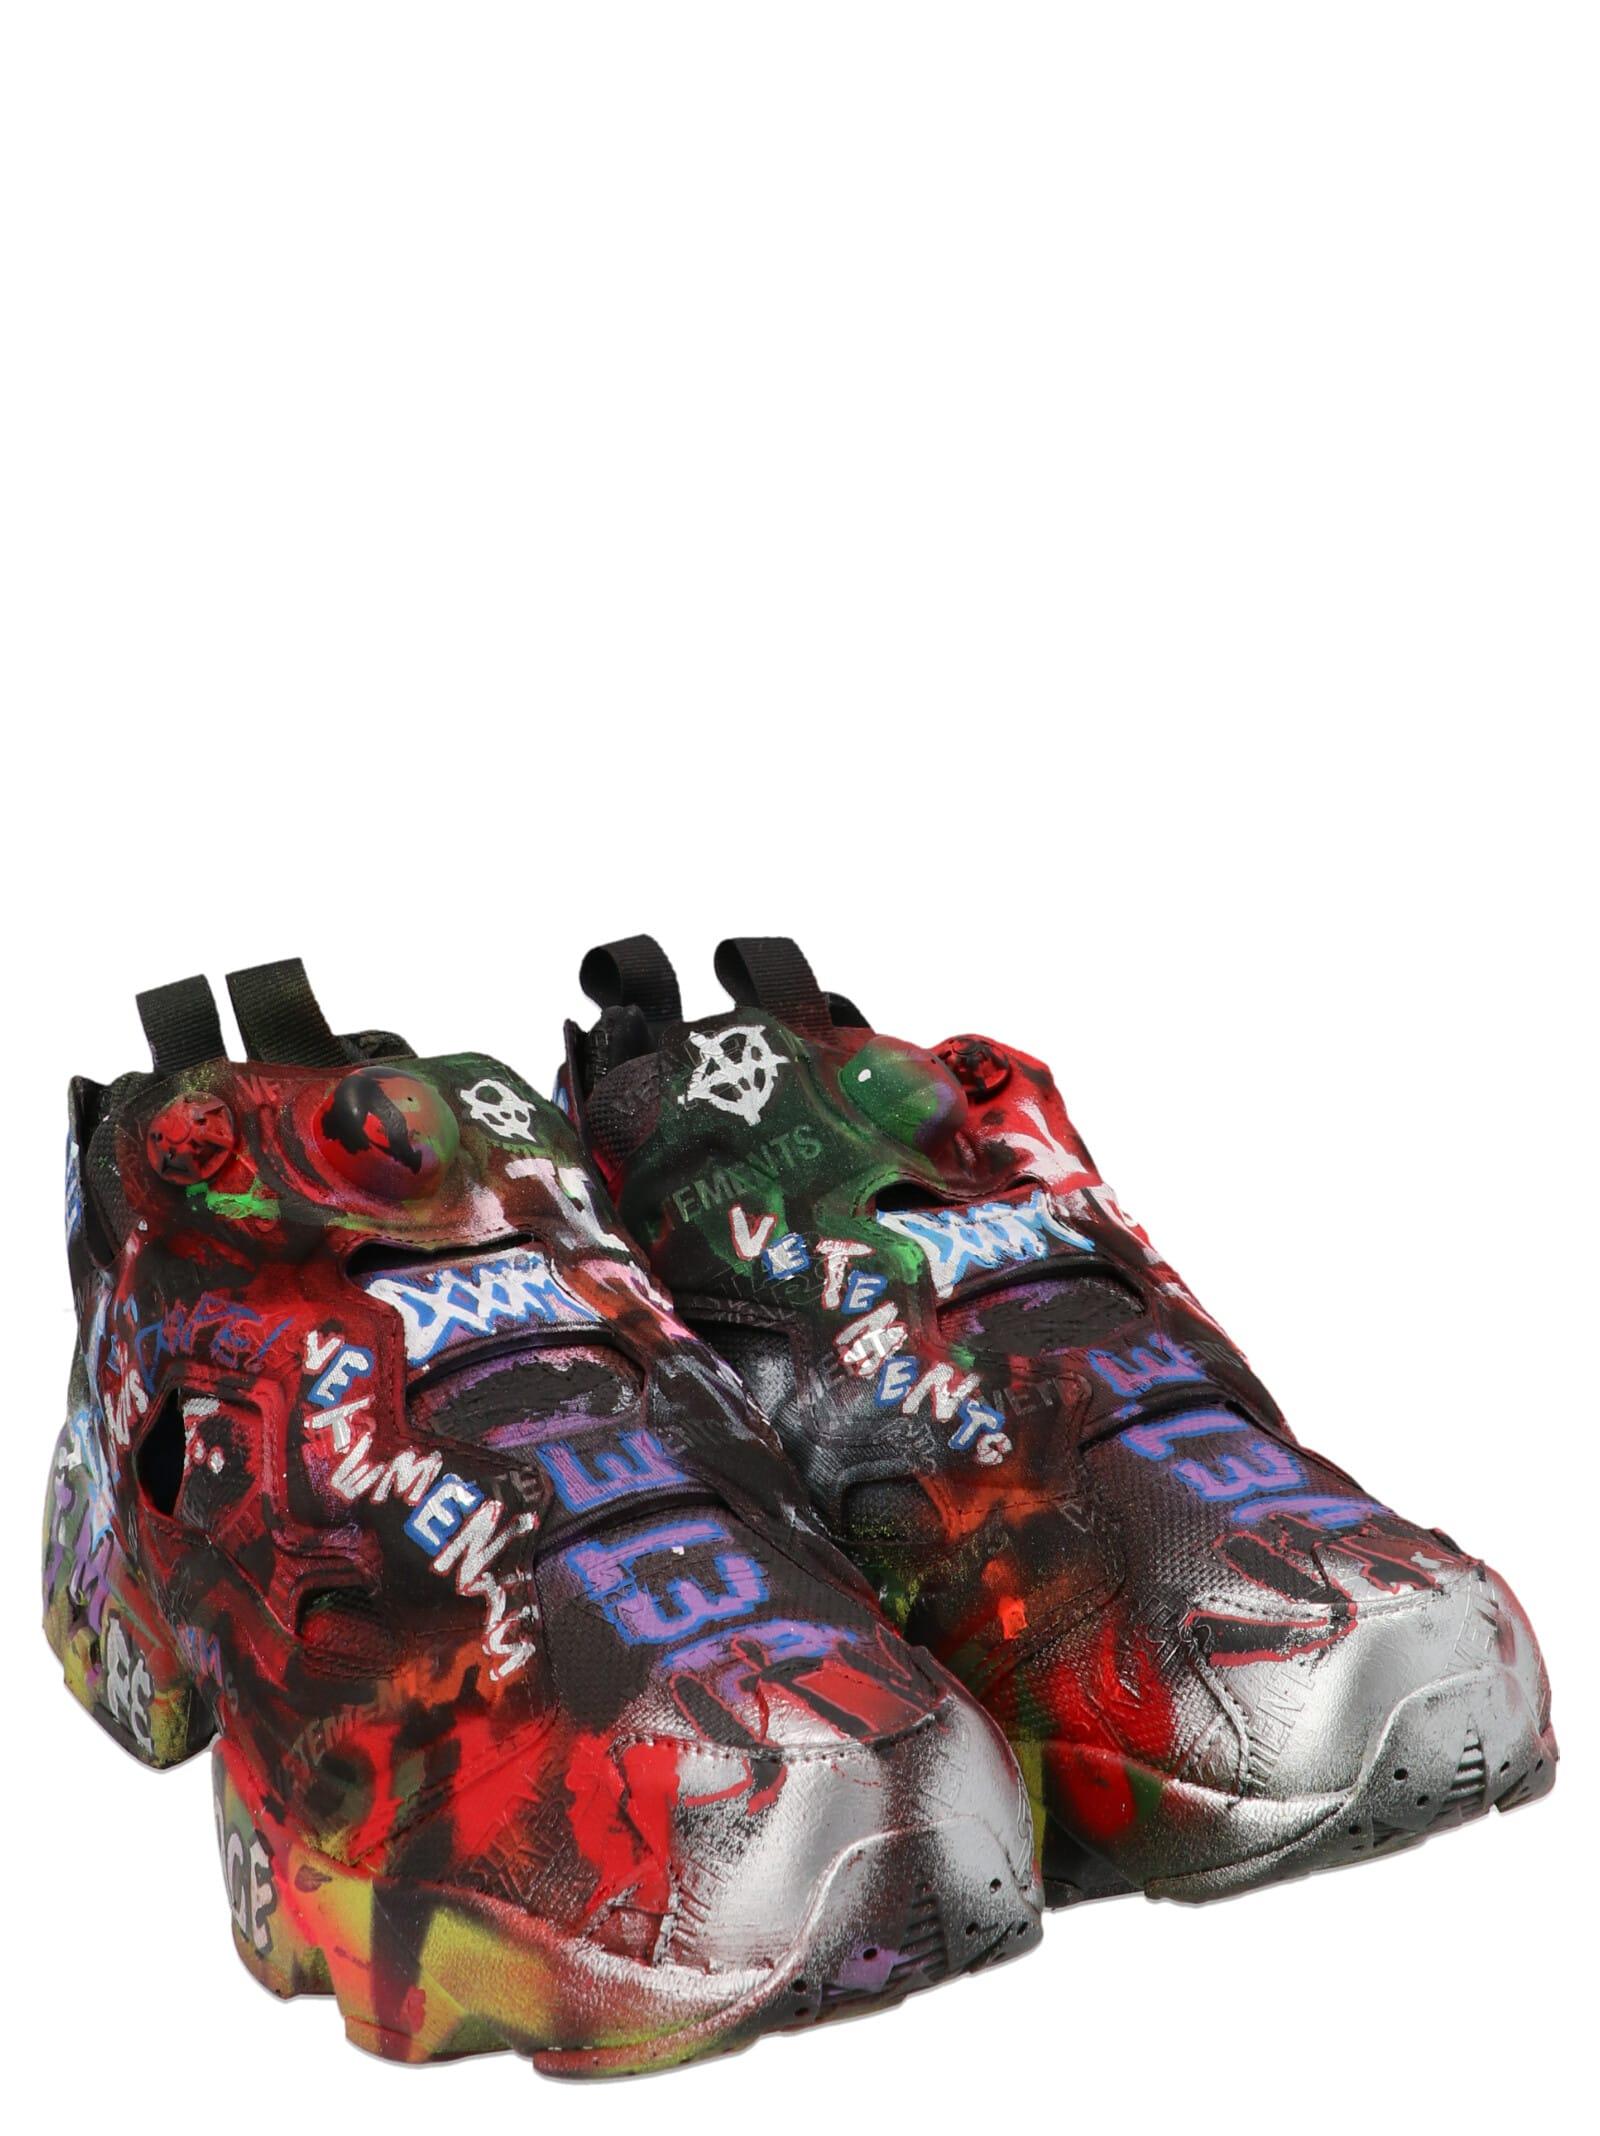 Vetements Hand Painted Instapump Fury X Reebok Sneakers Lyst